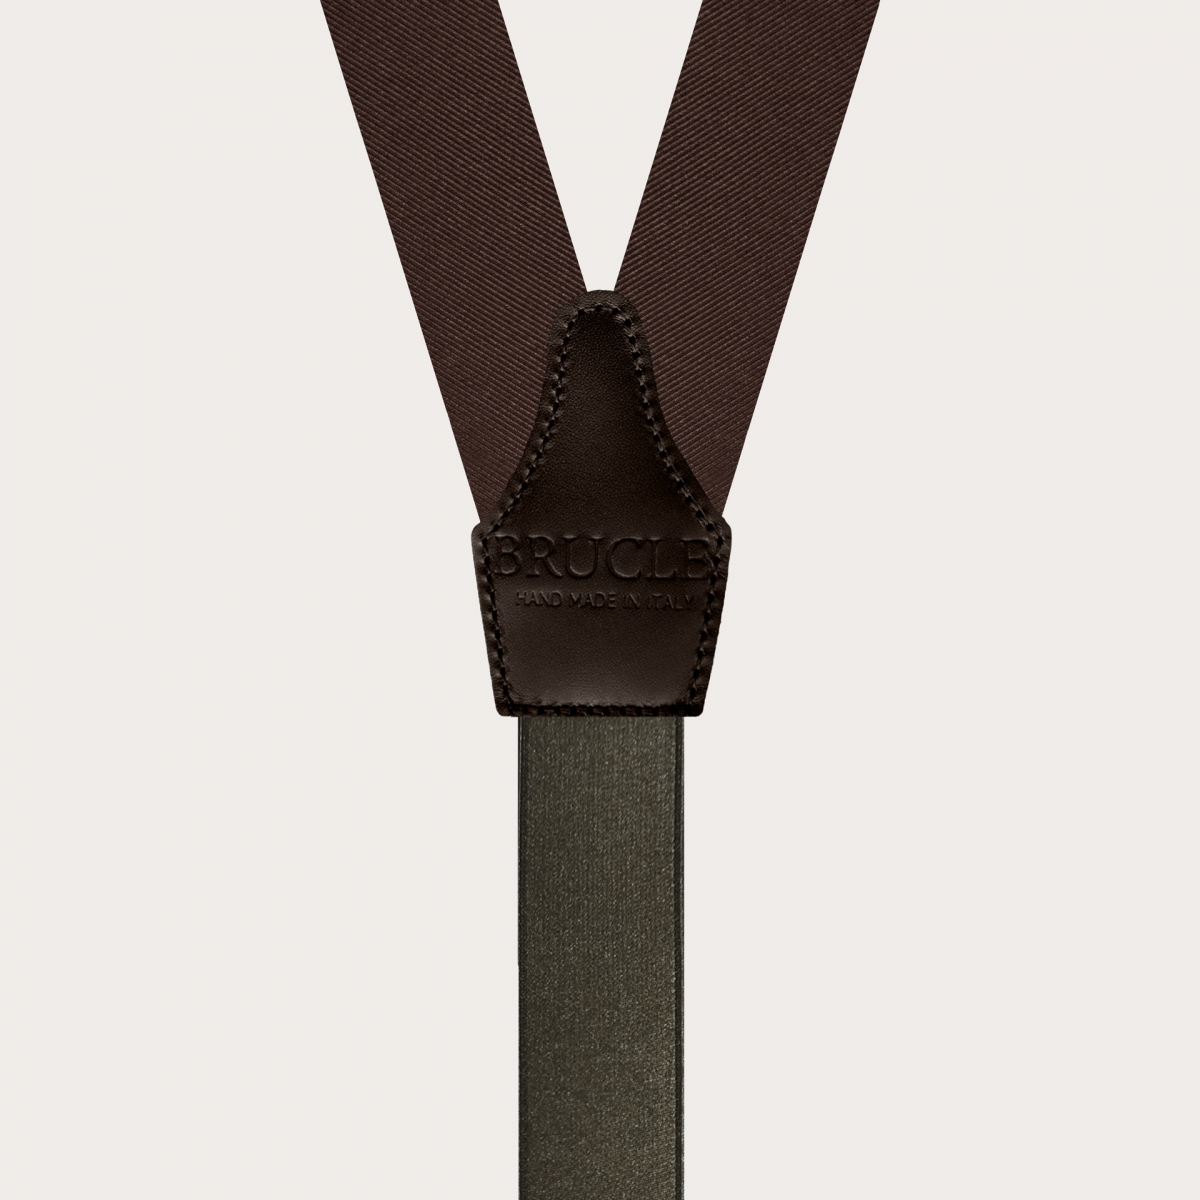 Formal Y-shape suspenders with braid runners, dark brown